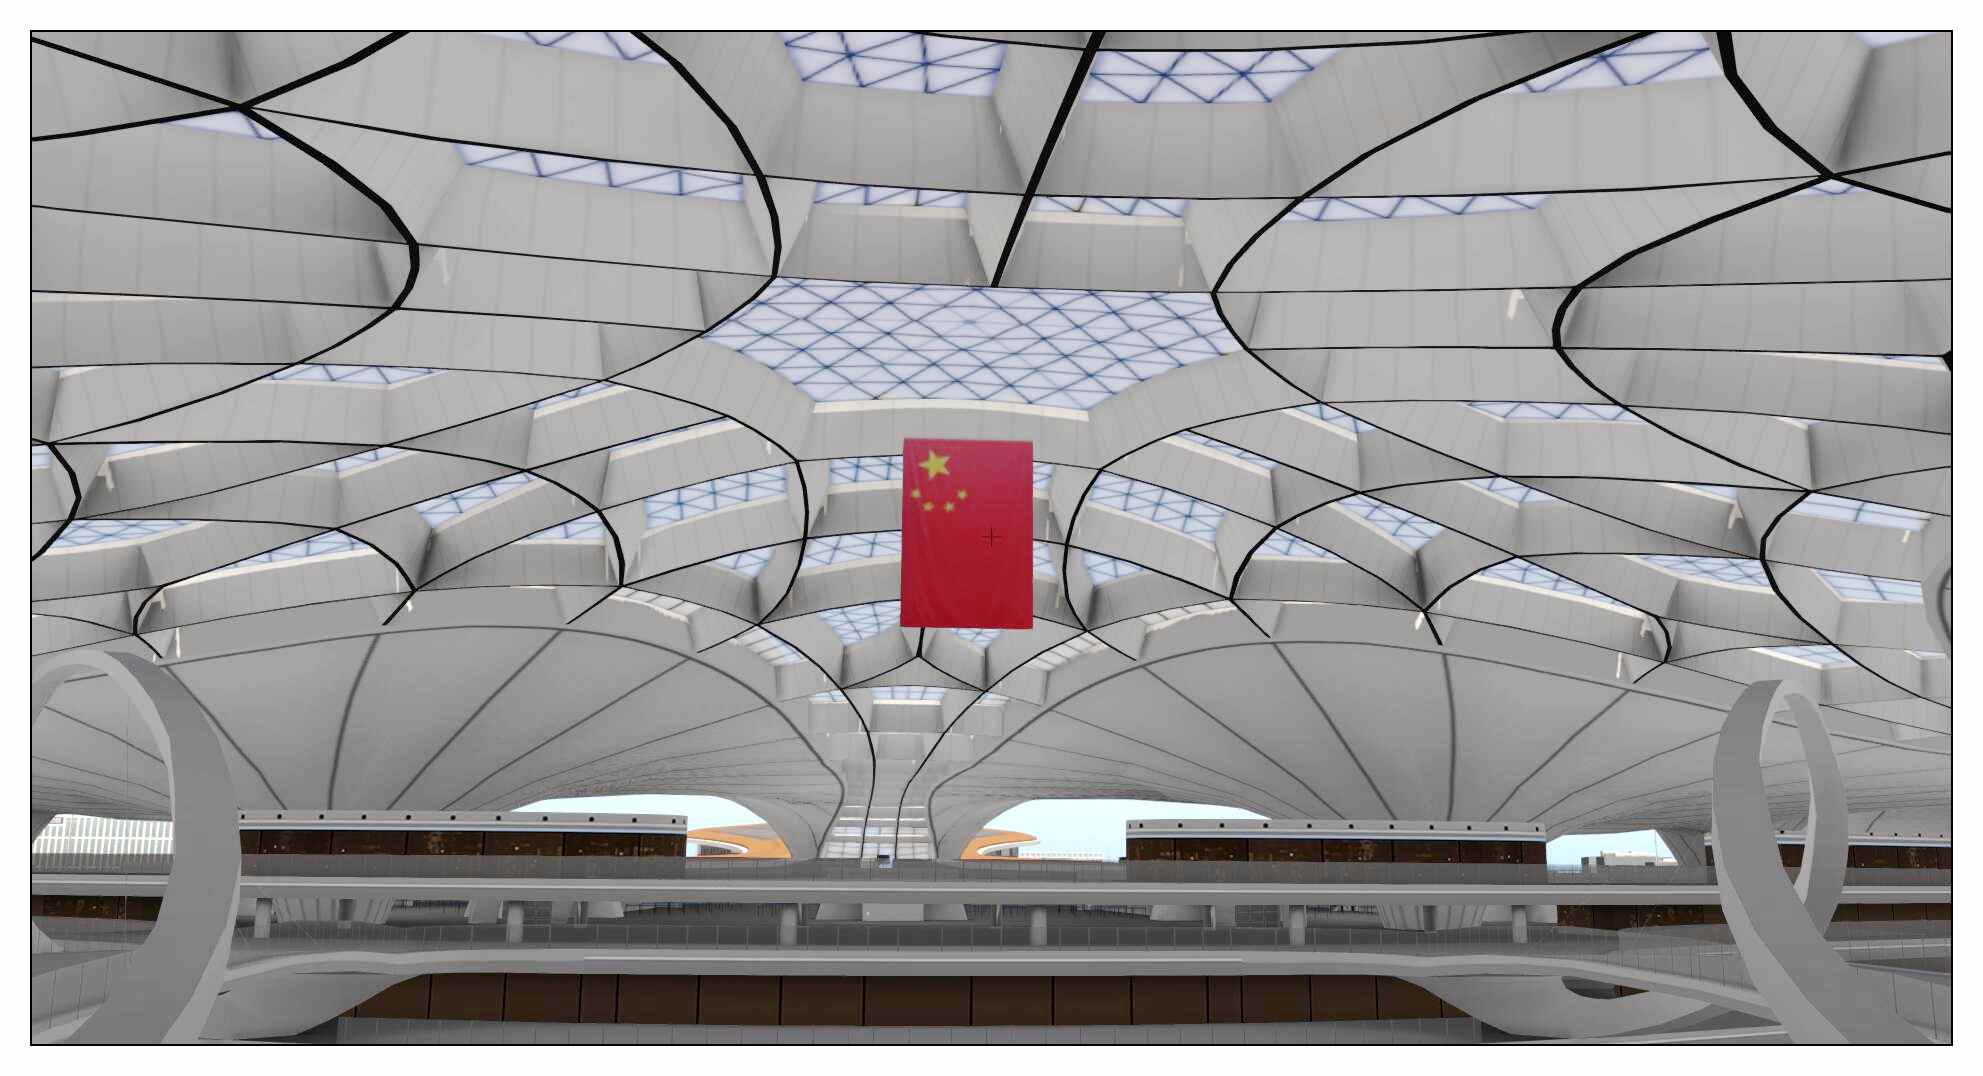 【X-Plane】ZBAD北京大兴国际机场-正式发布-8508 